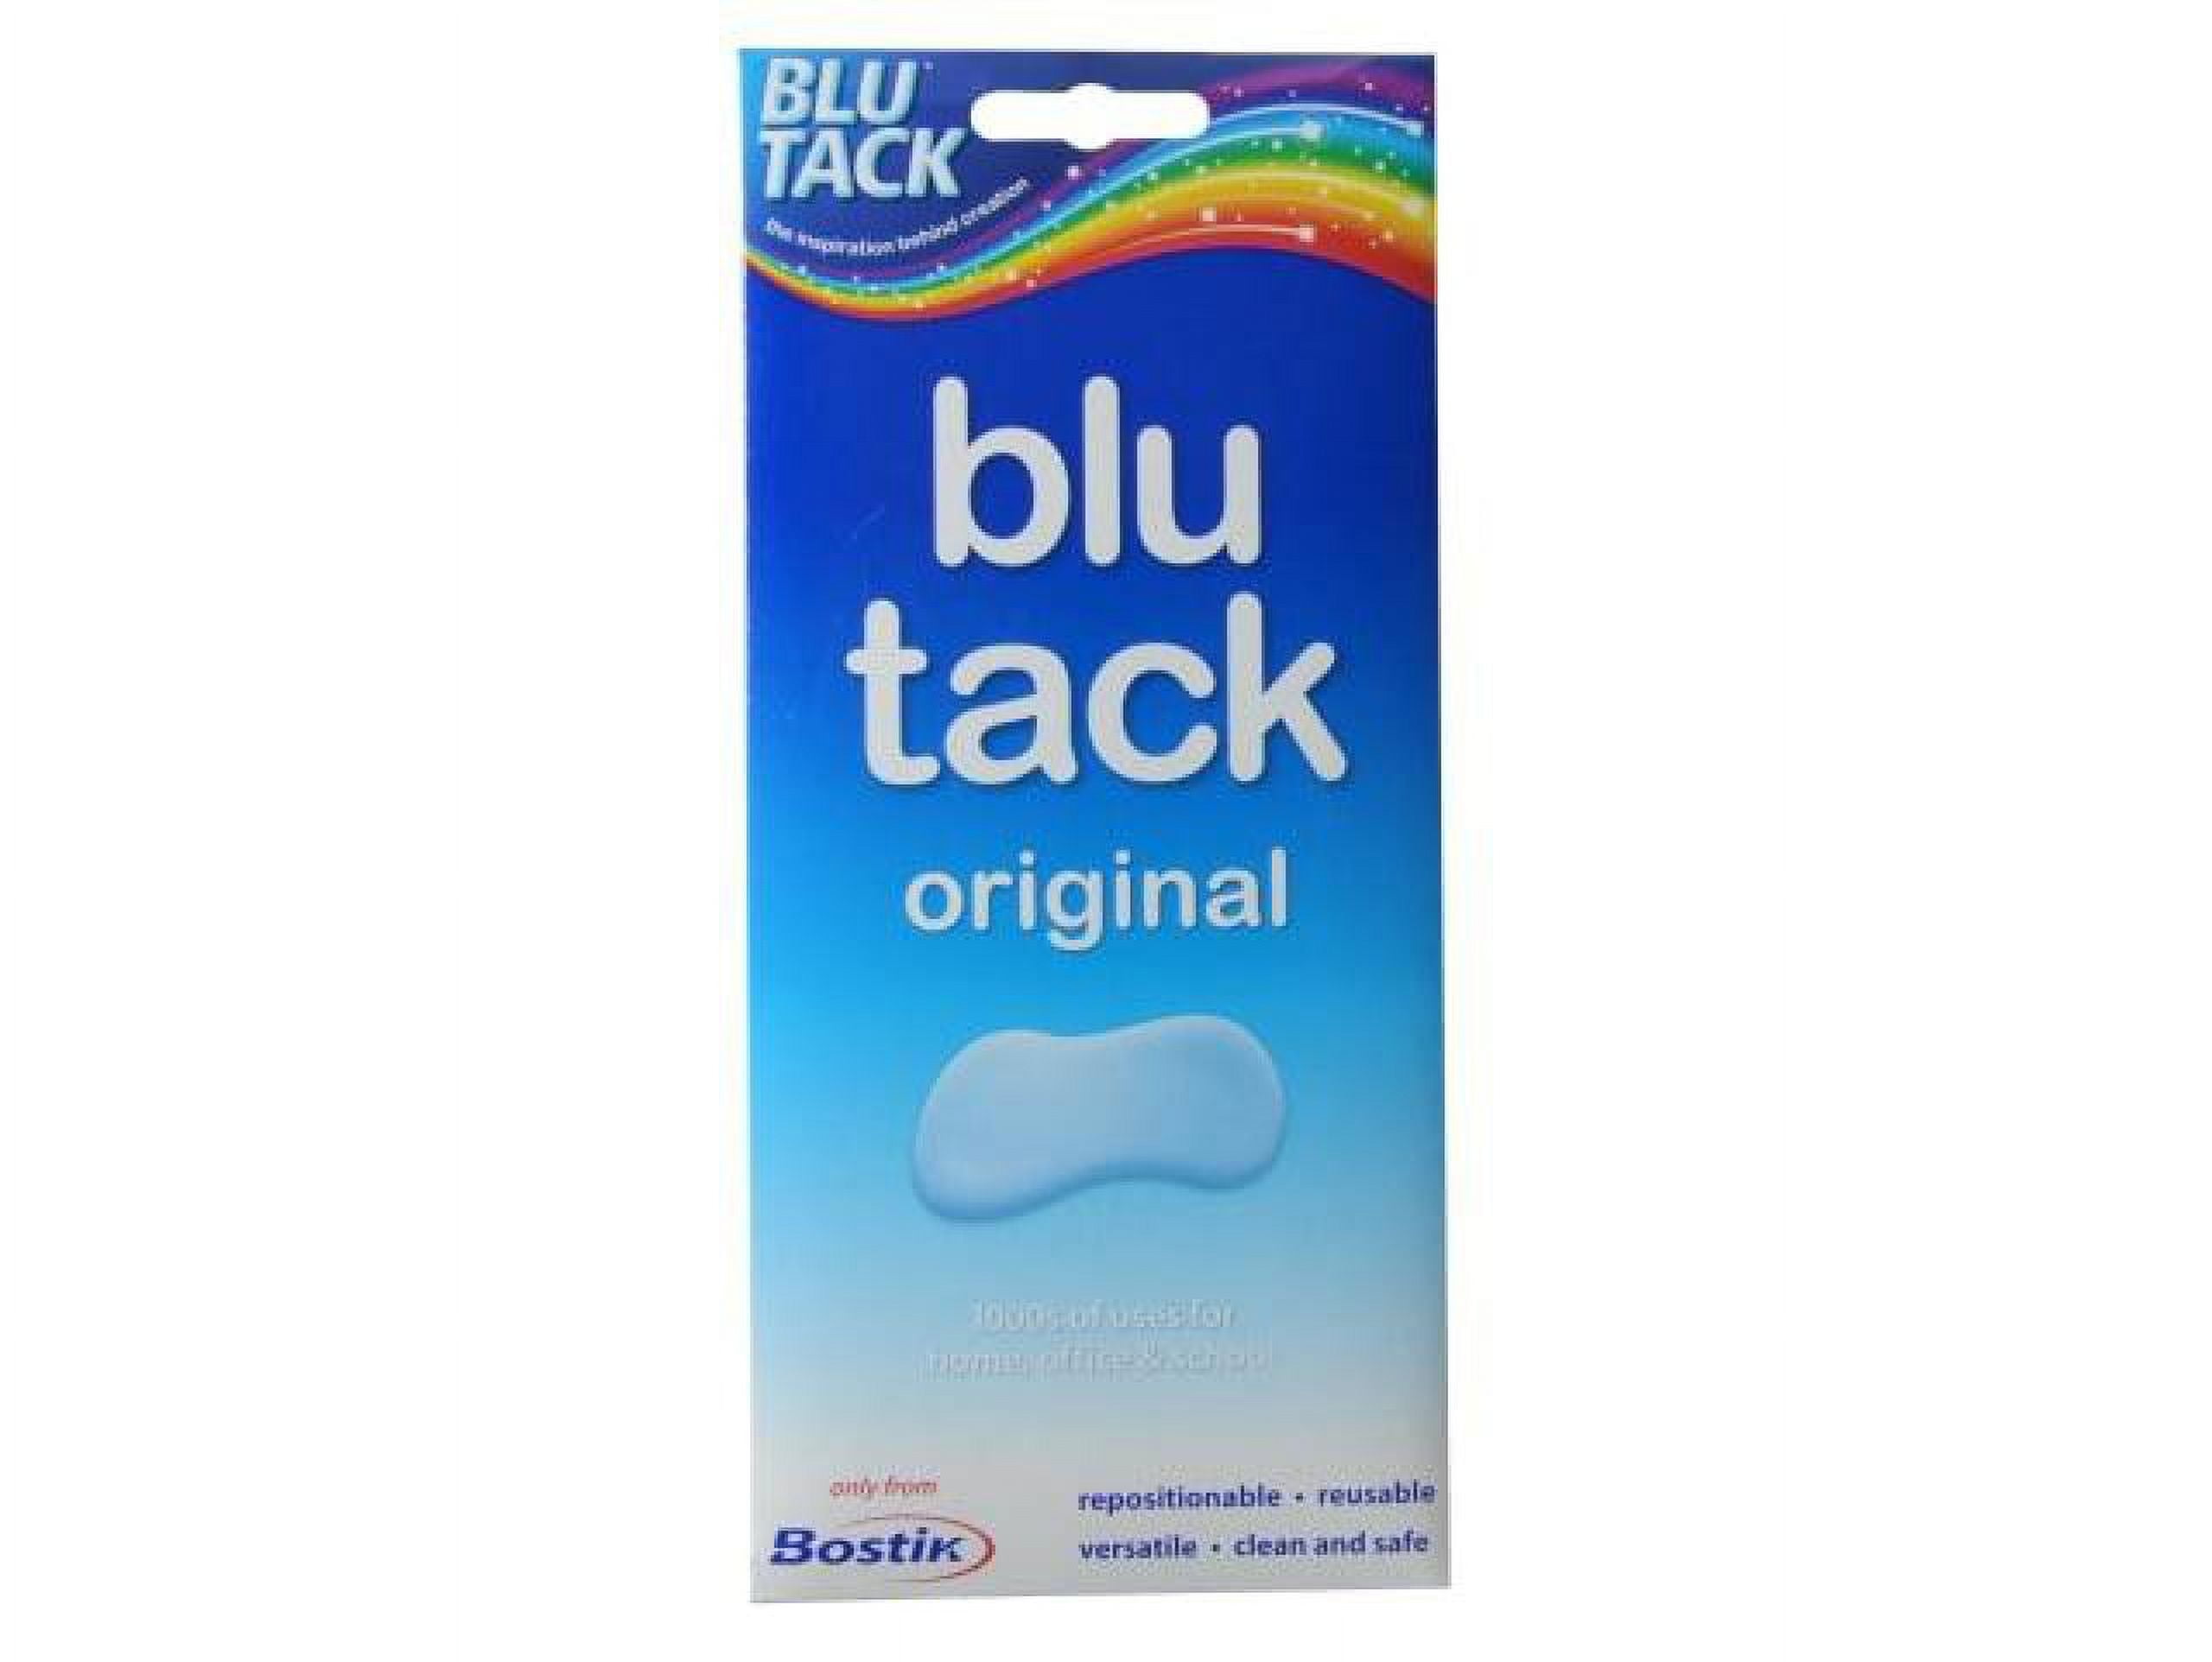  Bostik Blu-Tack Reusable Adhesive: 75g, 5 strips- orange,  green, pink, blue & yellow / Assorted (Orange, Green, Pink, Blue & Yellow)  : Adhesive Putty : Office Products